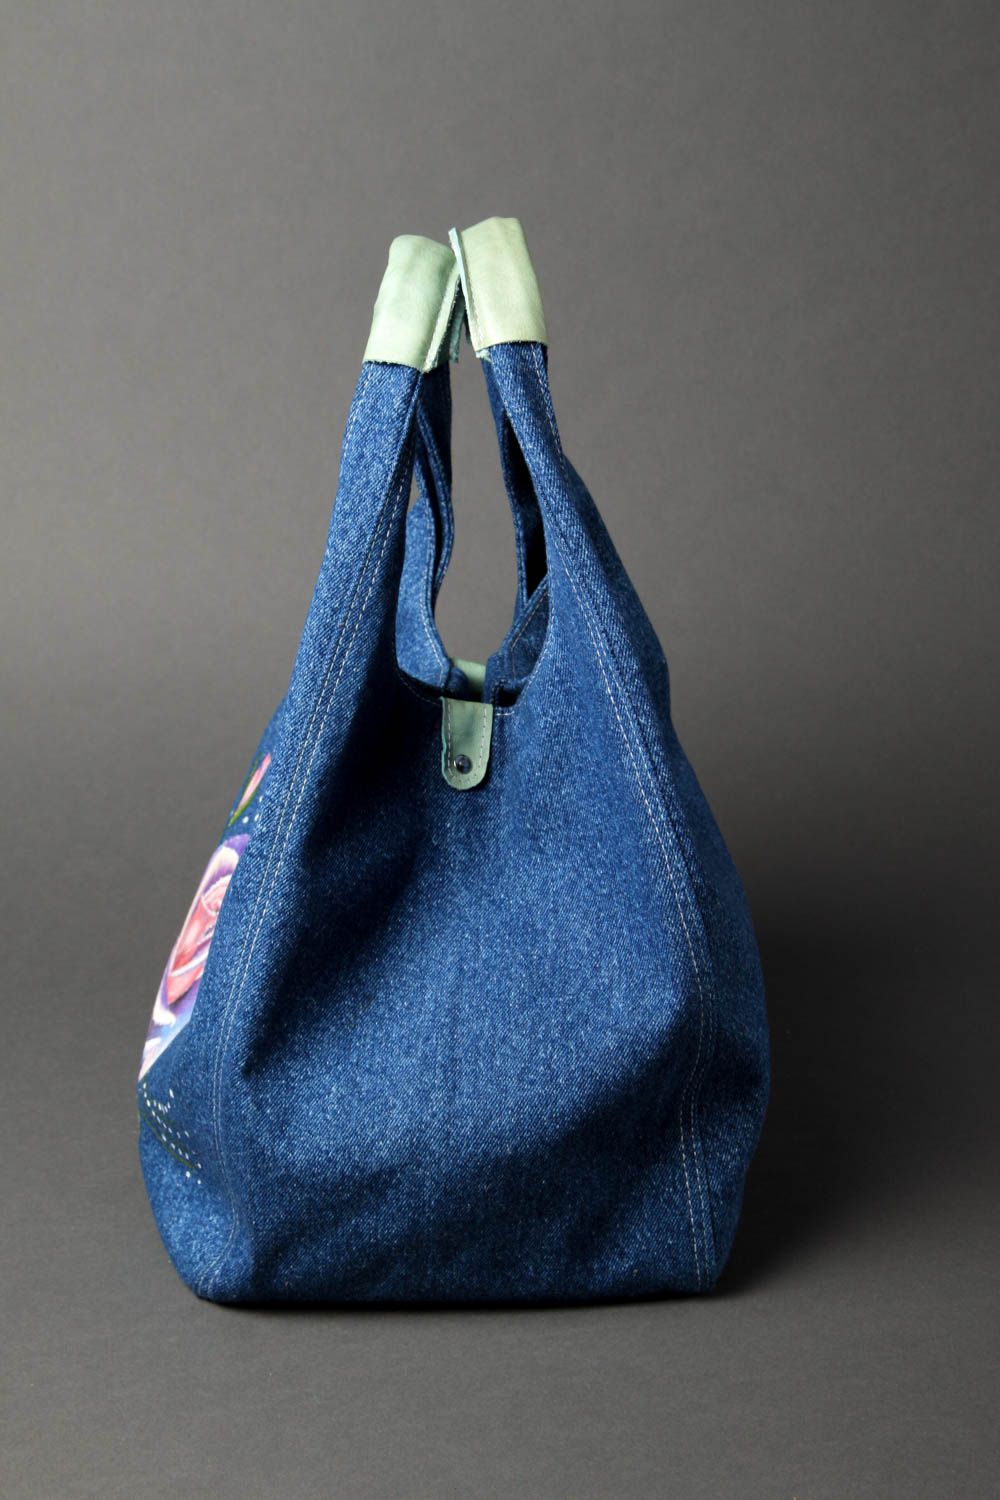 Сумка ручной работы женская сумка авторская тканевая сумка из джинсовой ткани фото 2